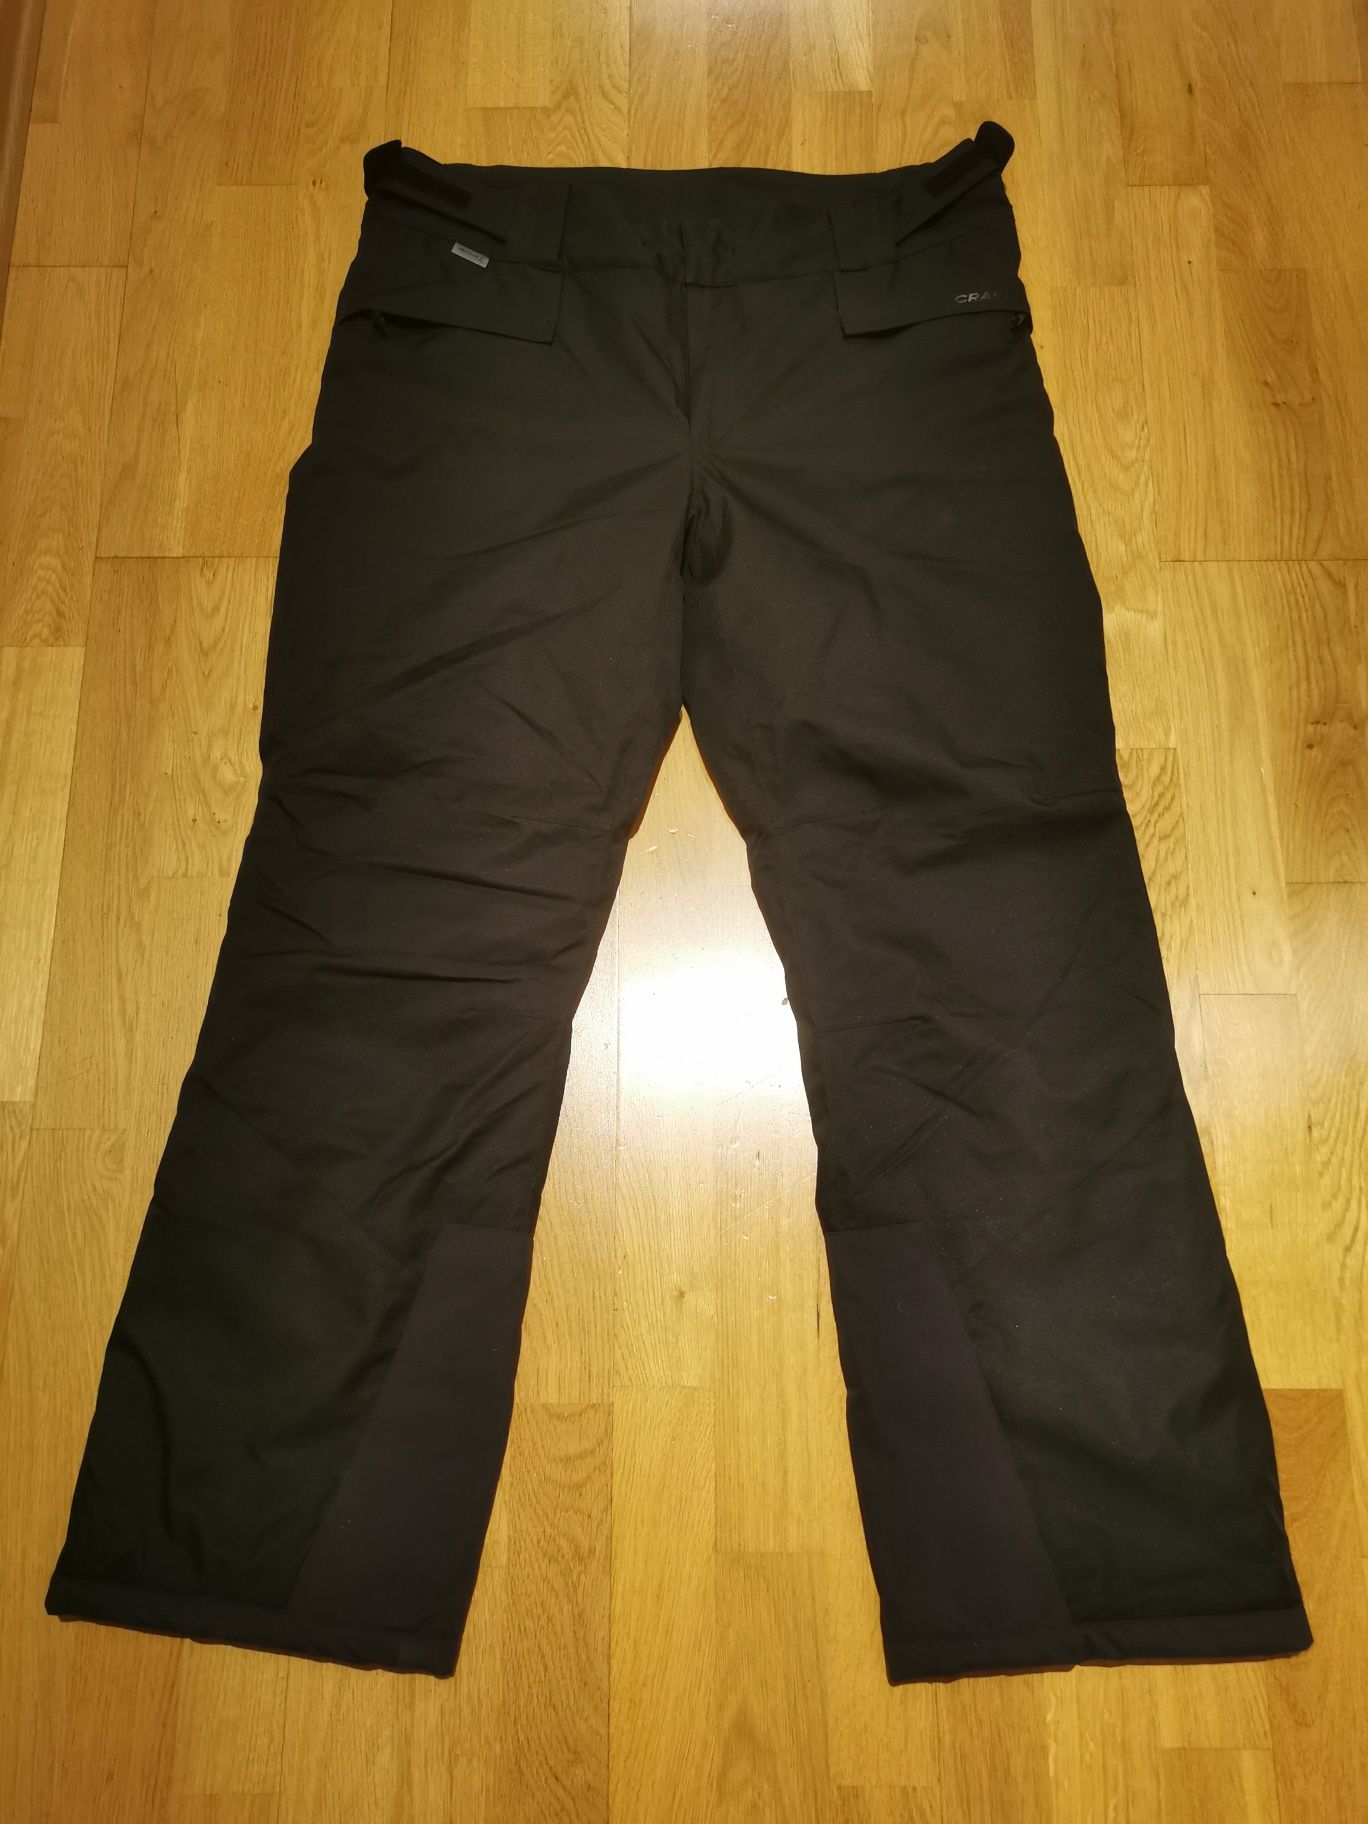 Spodnie narciarskie Craft ventair X, rozmiar XL